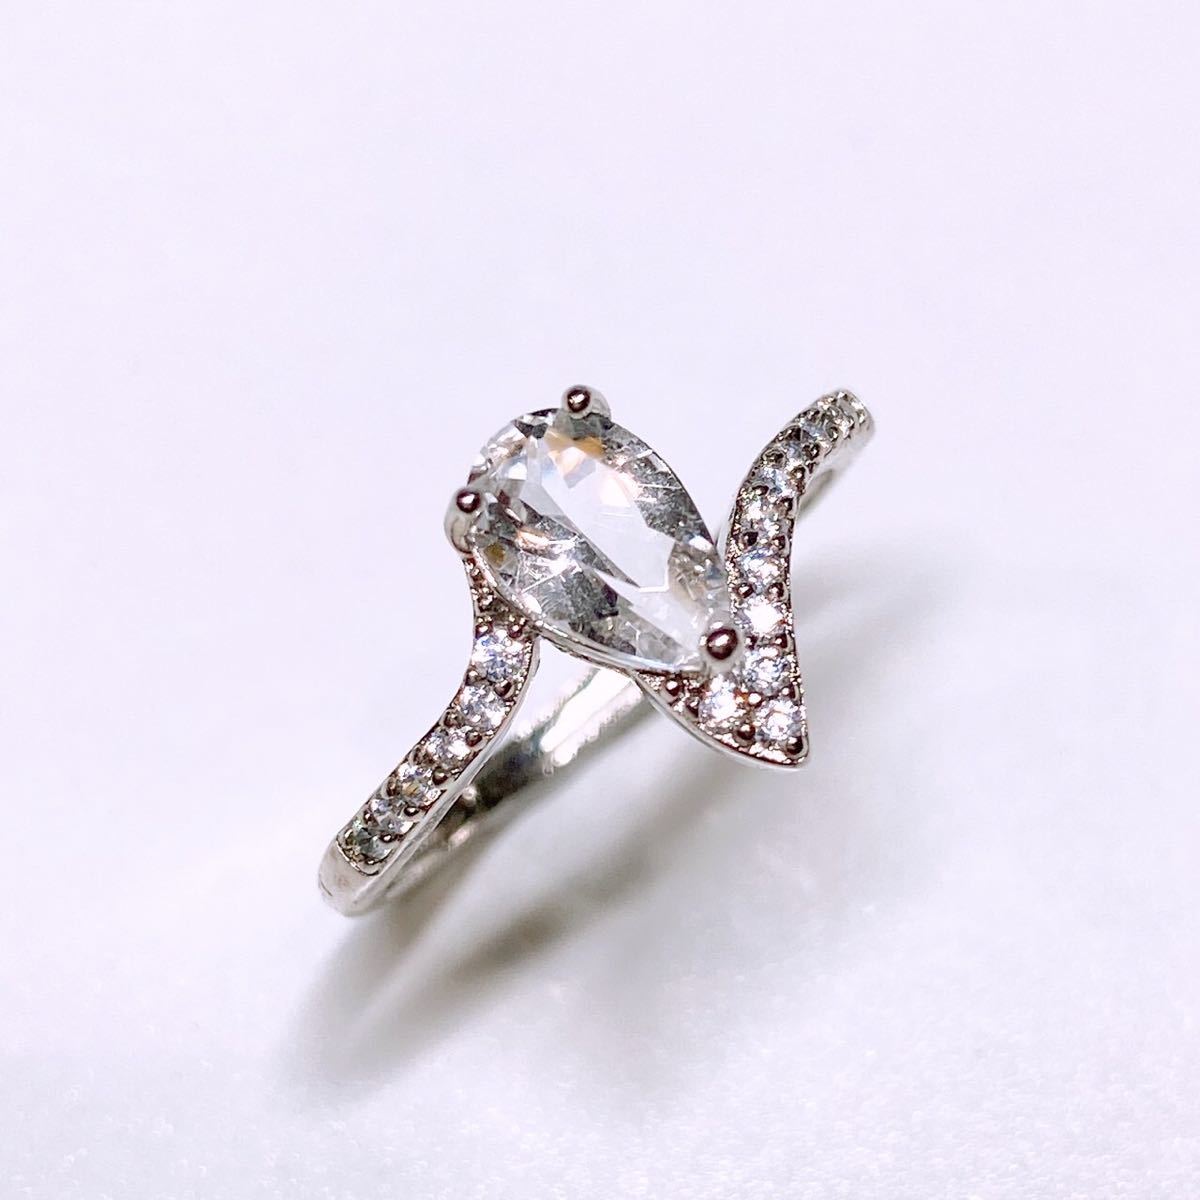  высший класс разрозненный натуральный Brazil производство кристалл 1ct драгоценнный камень свободный размер кольцо кольцо кольцо 